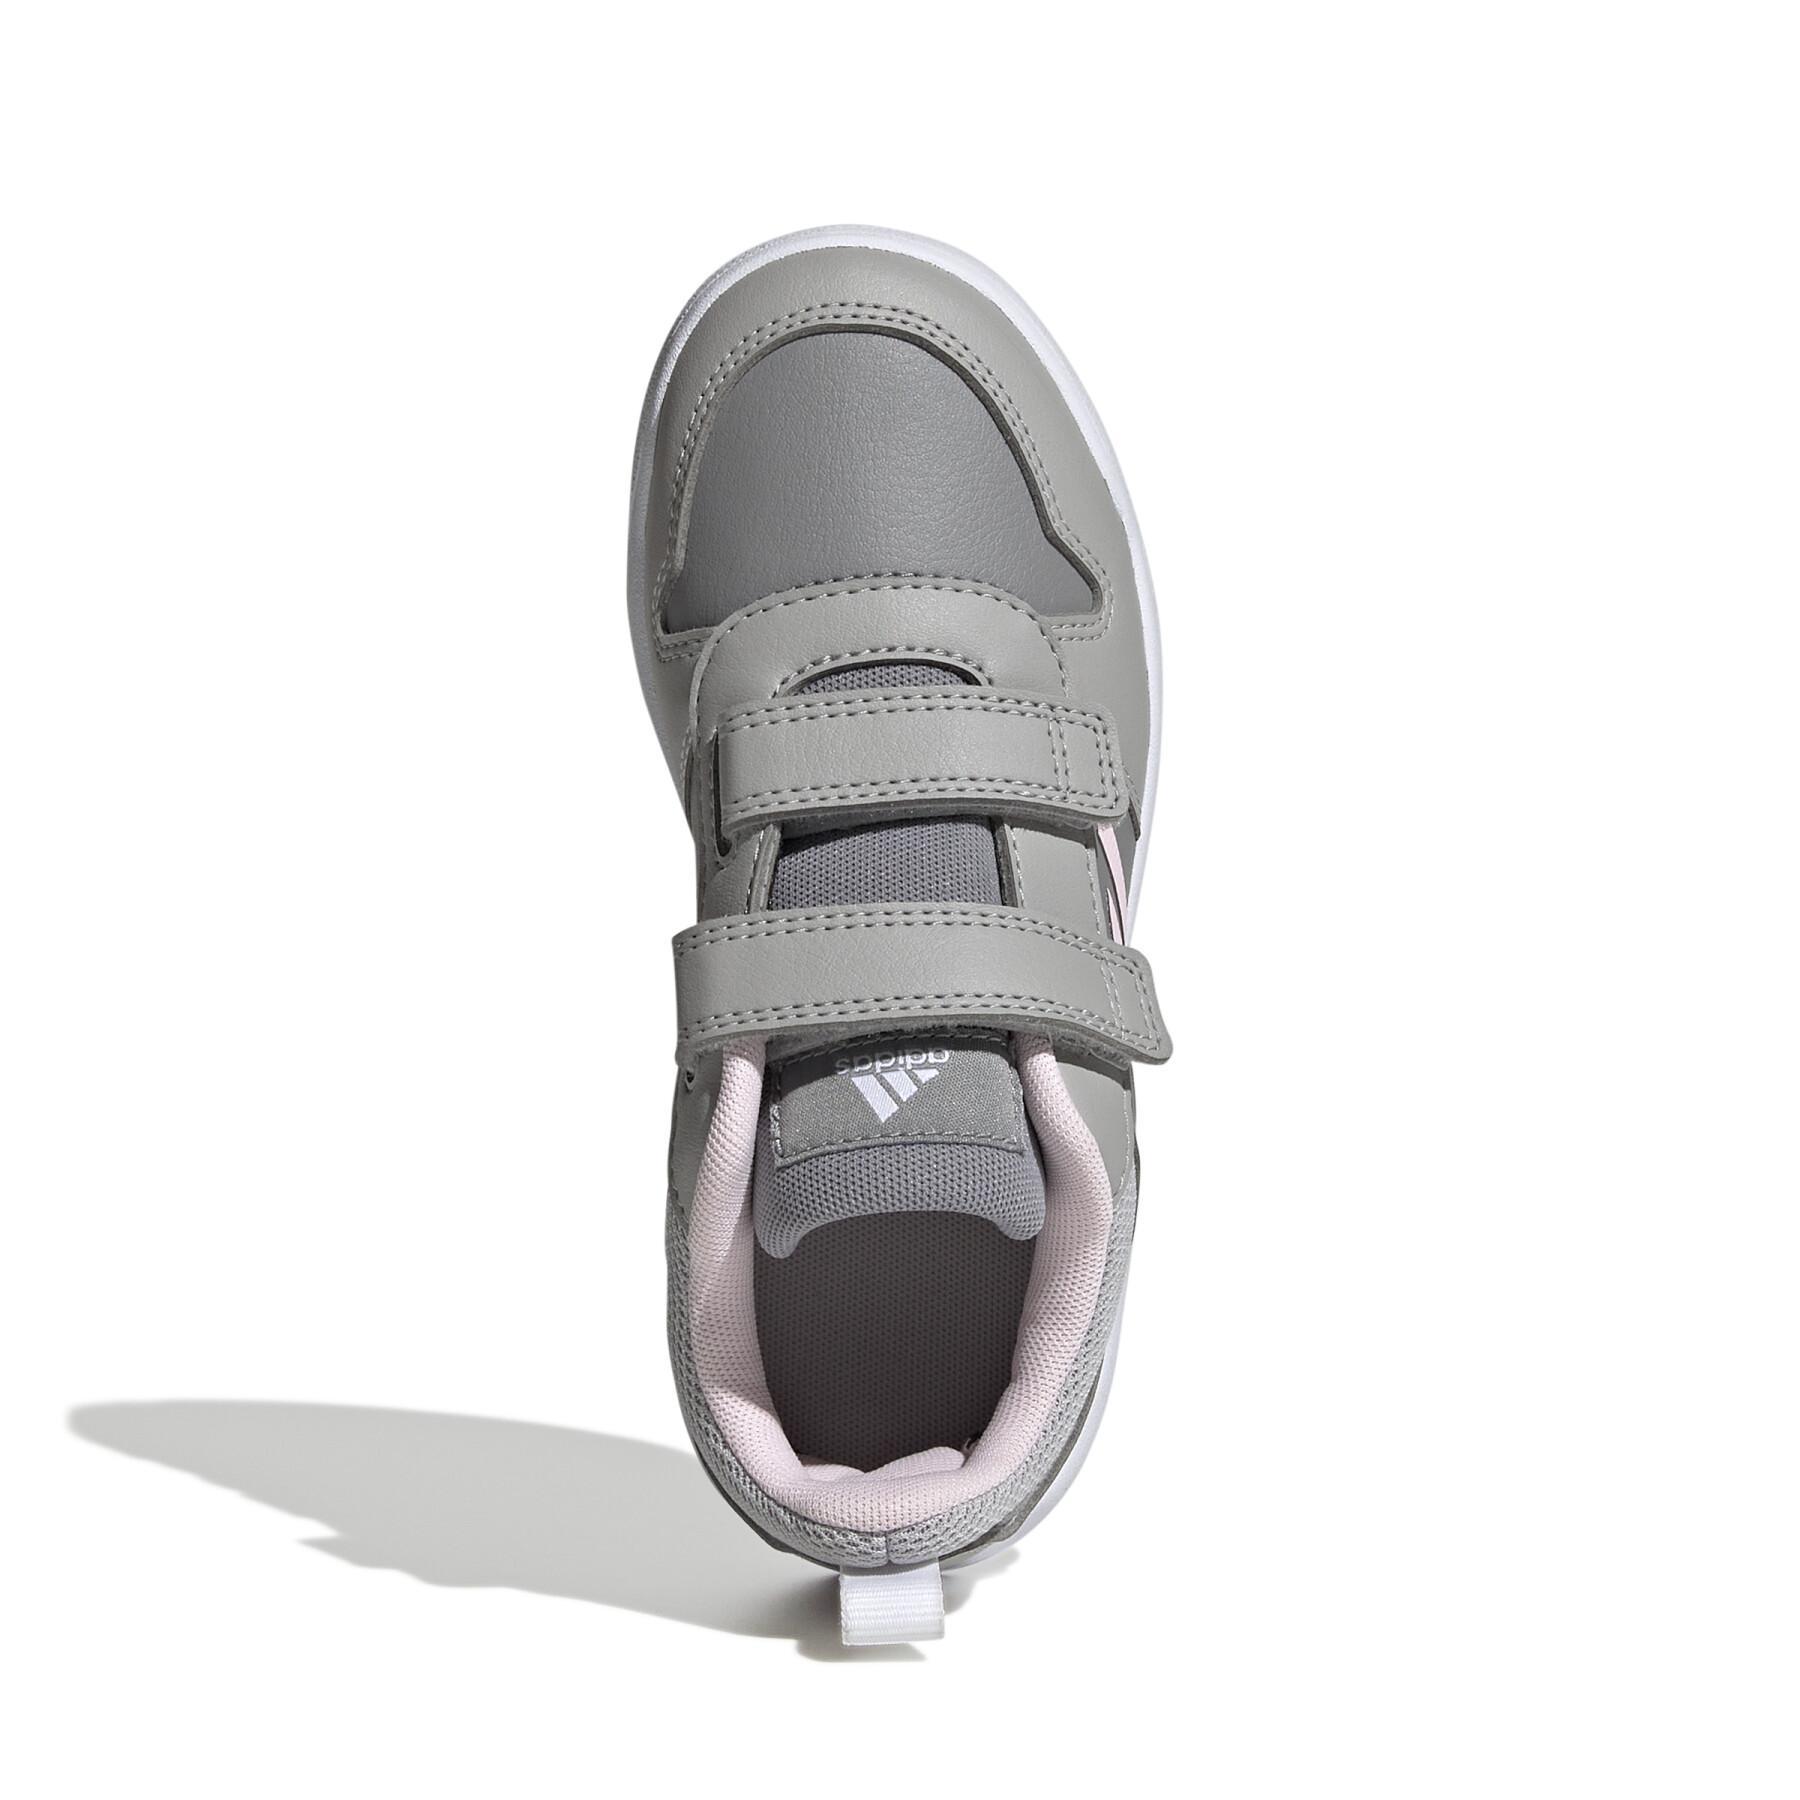 Chaussures de running enfant adidas Tensaur